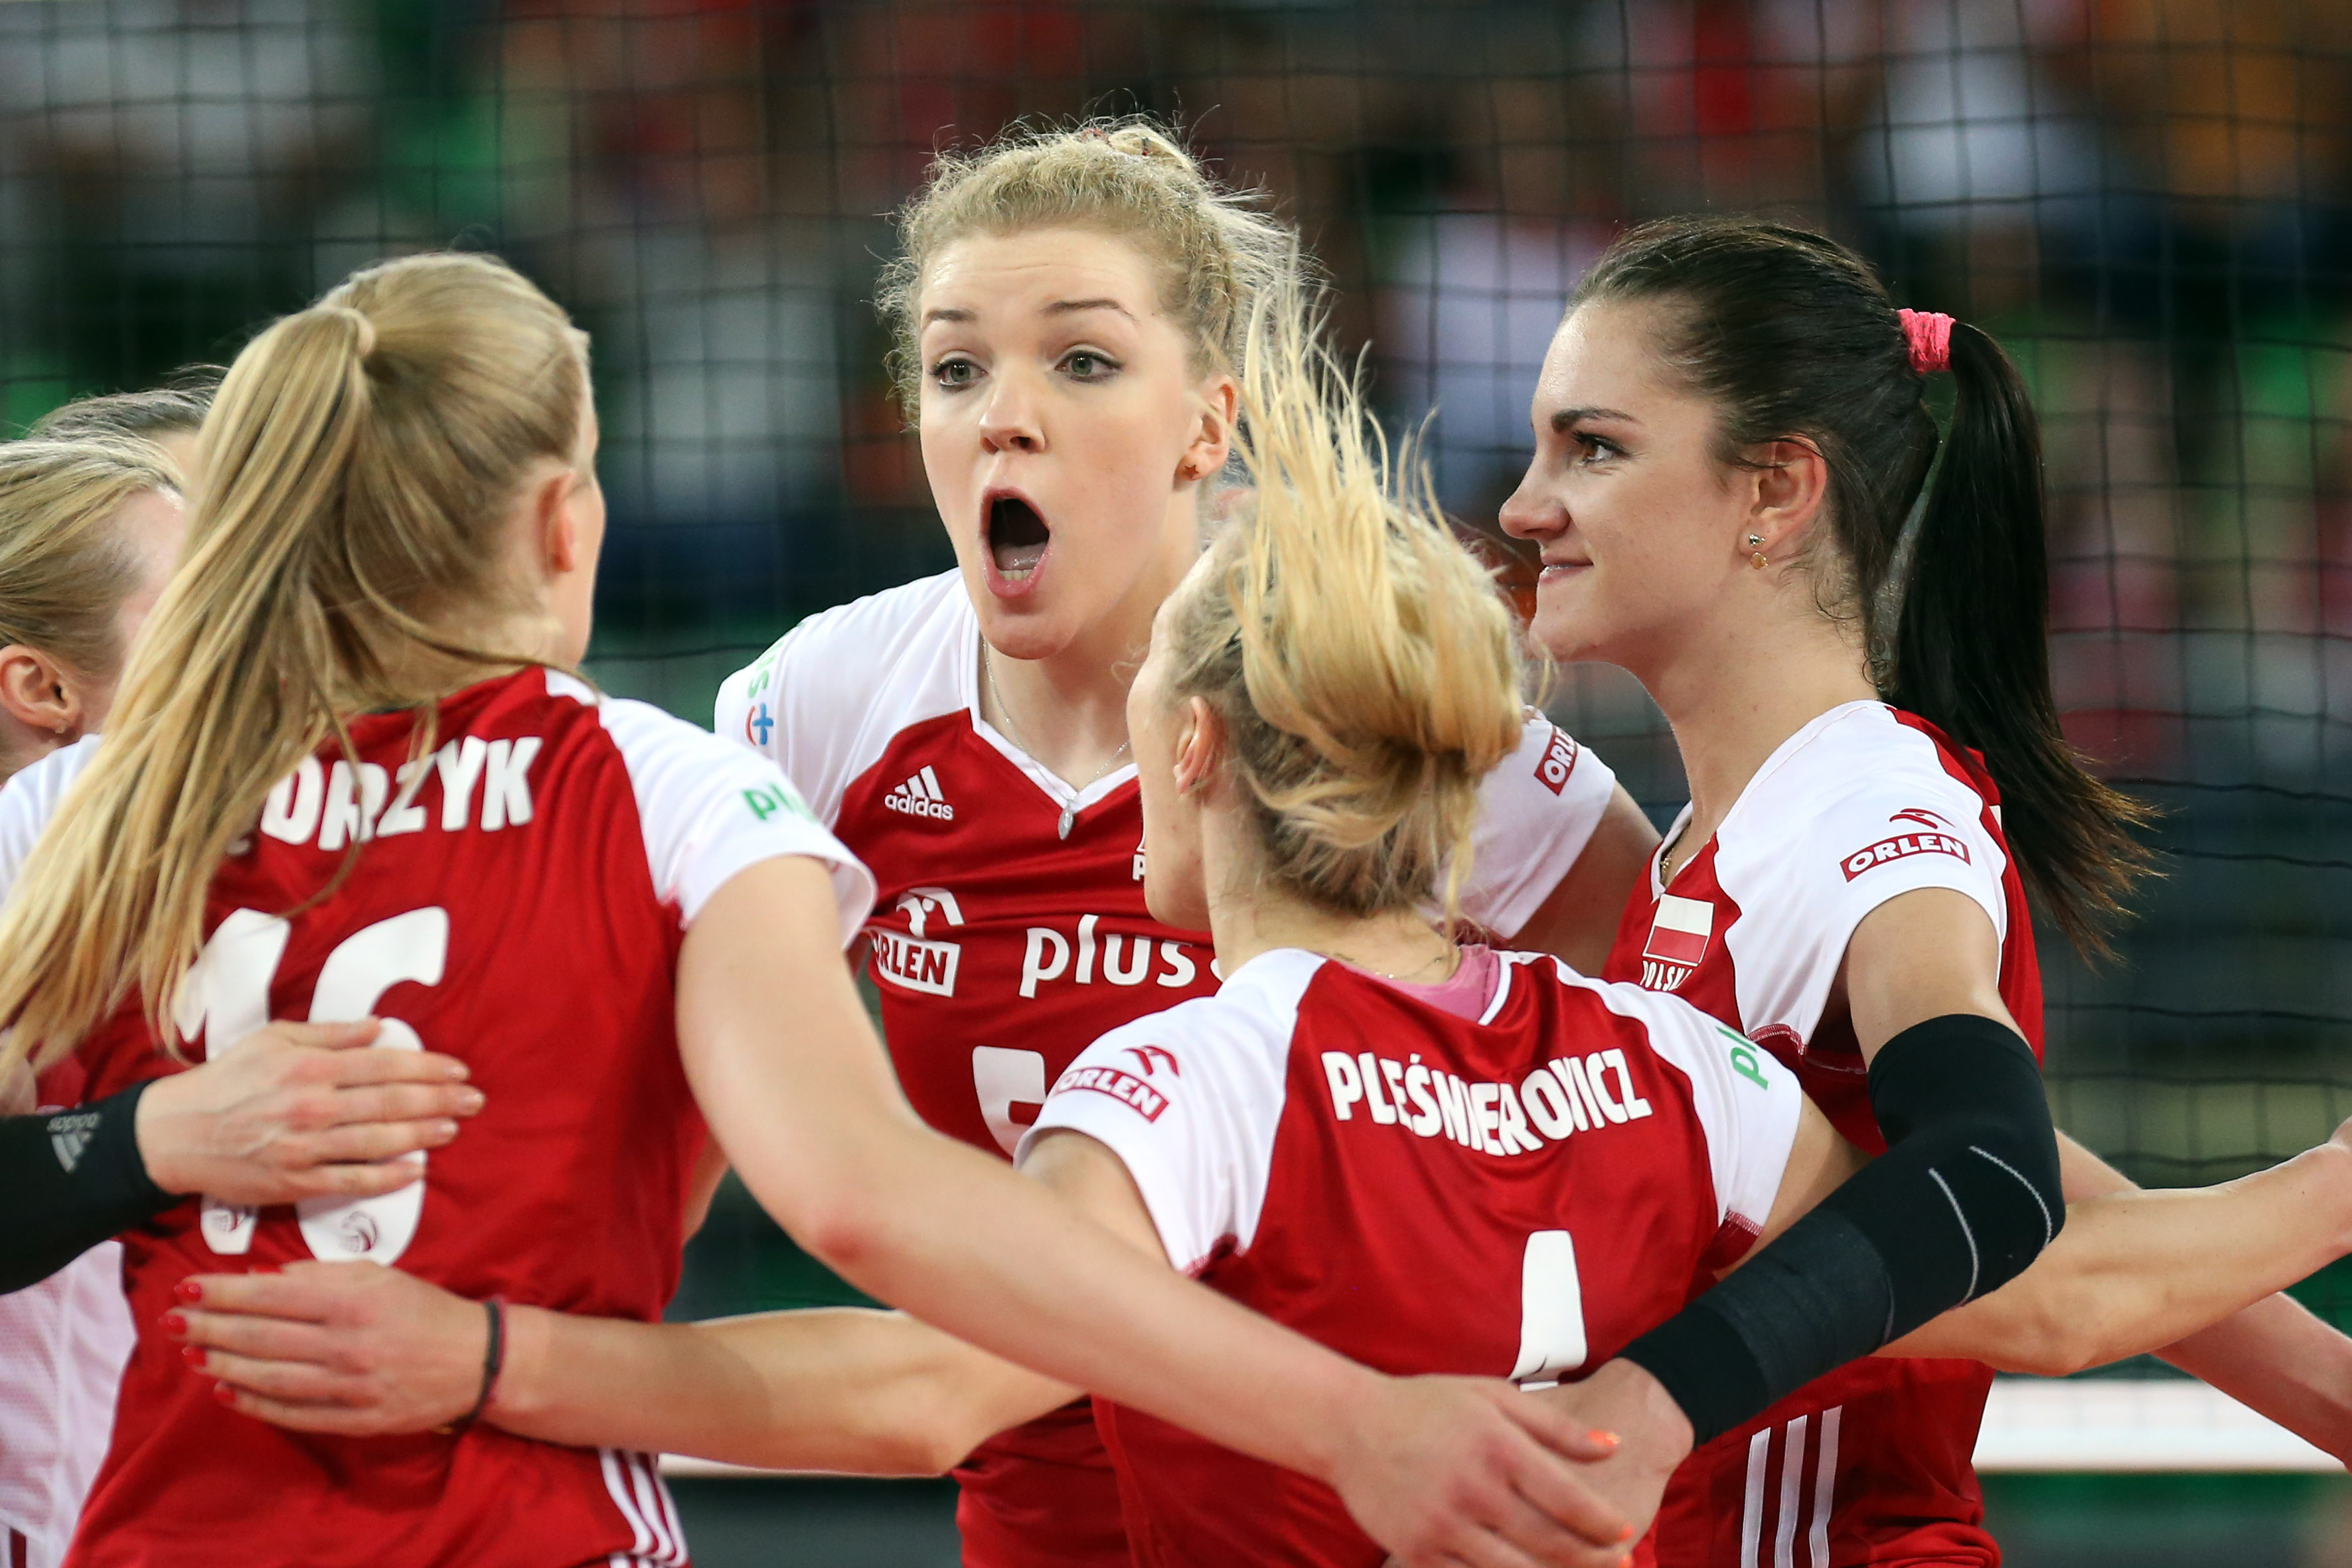 Mistrzostwa świata w siatkówce kobiet 2022 odbędą się w Polsce i Holandii -  Przegląd Sportowy